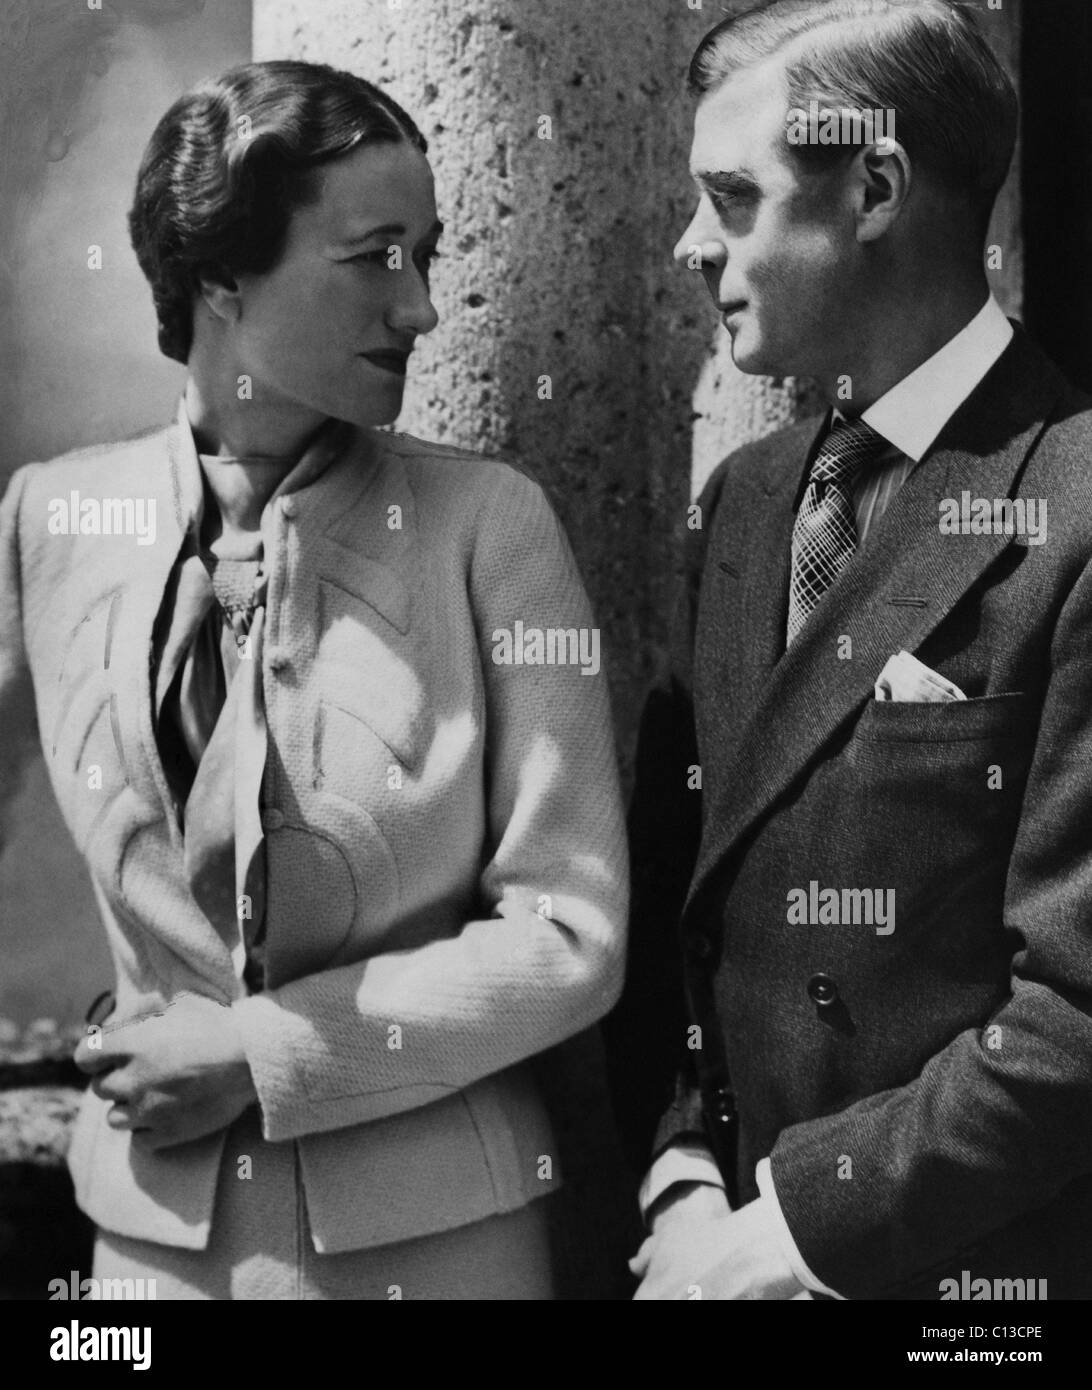 La Duchesse de Windsor, Wallis Simpson et le Prince Edward, duc de Windsor vers le début des années 1940 Banque D'Images